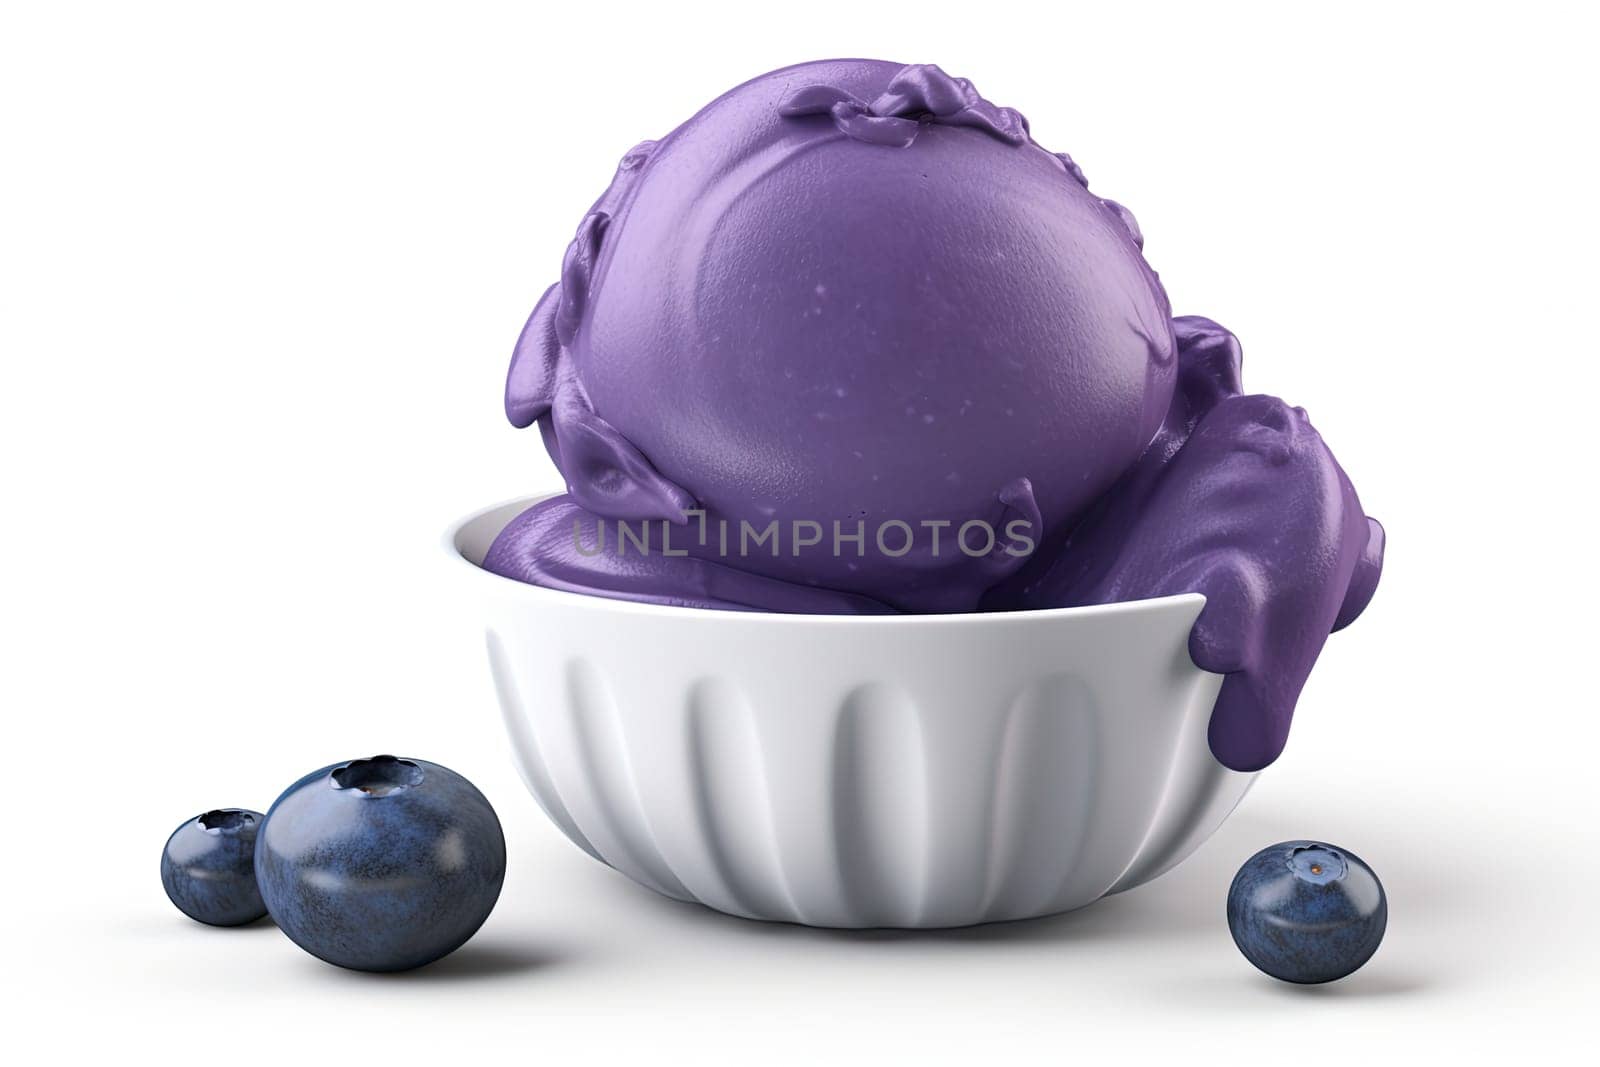 Raspberry ice cream scoop with berries by GekaSkr